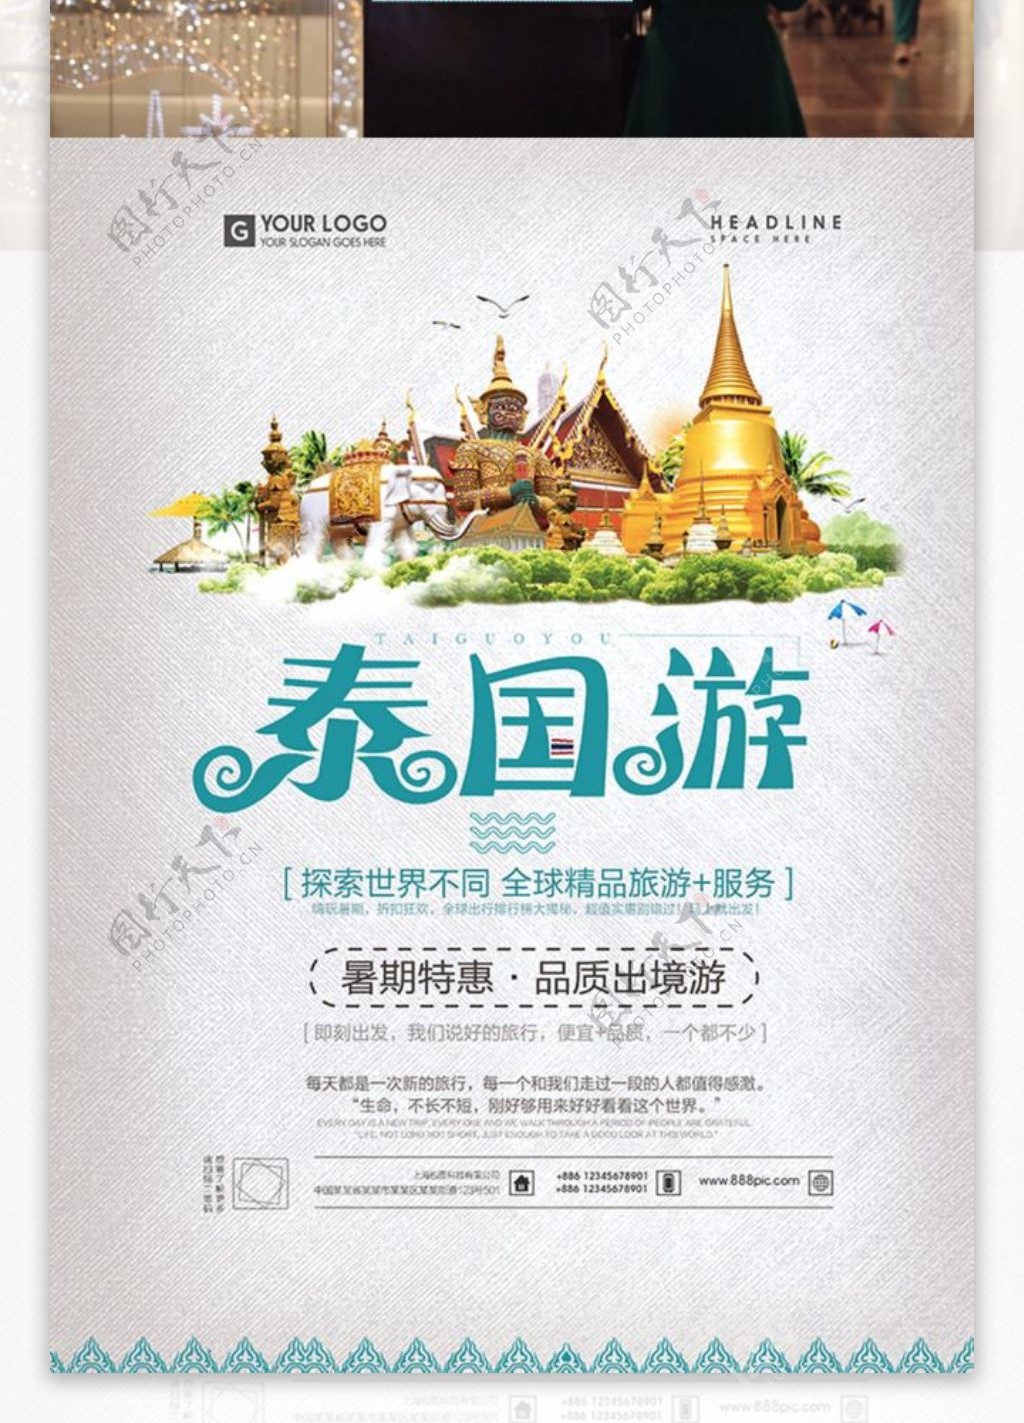 旅行社泰国东南亚三日游旅行旅游宣传促销海报暑期特惠品质出境游